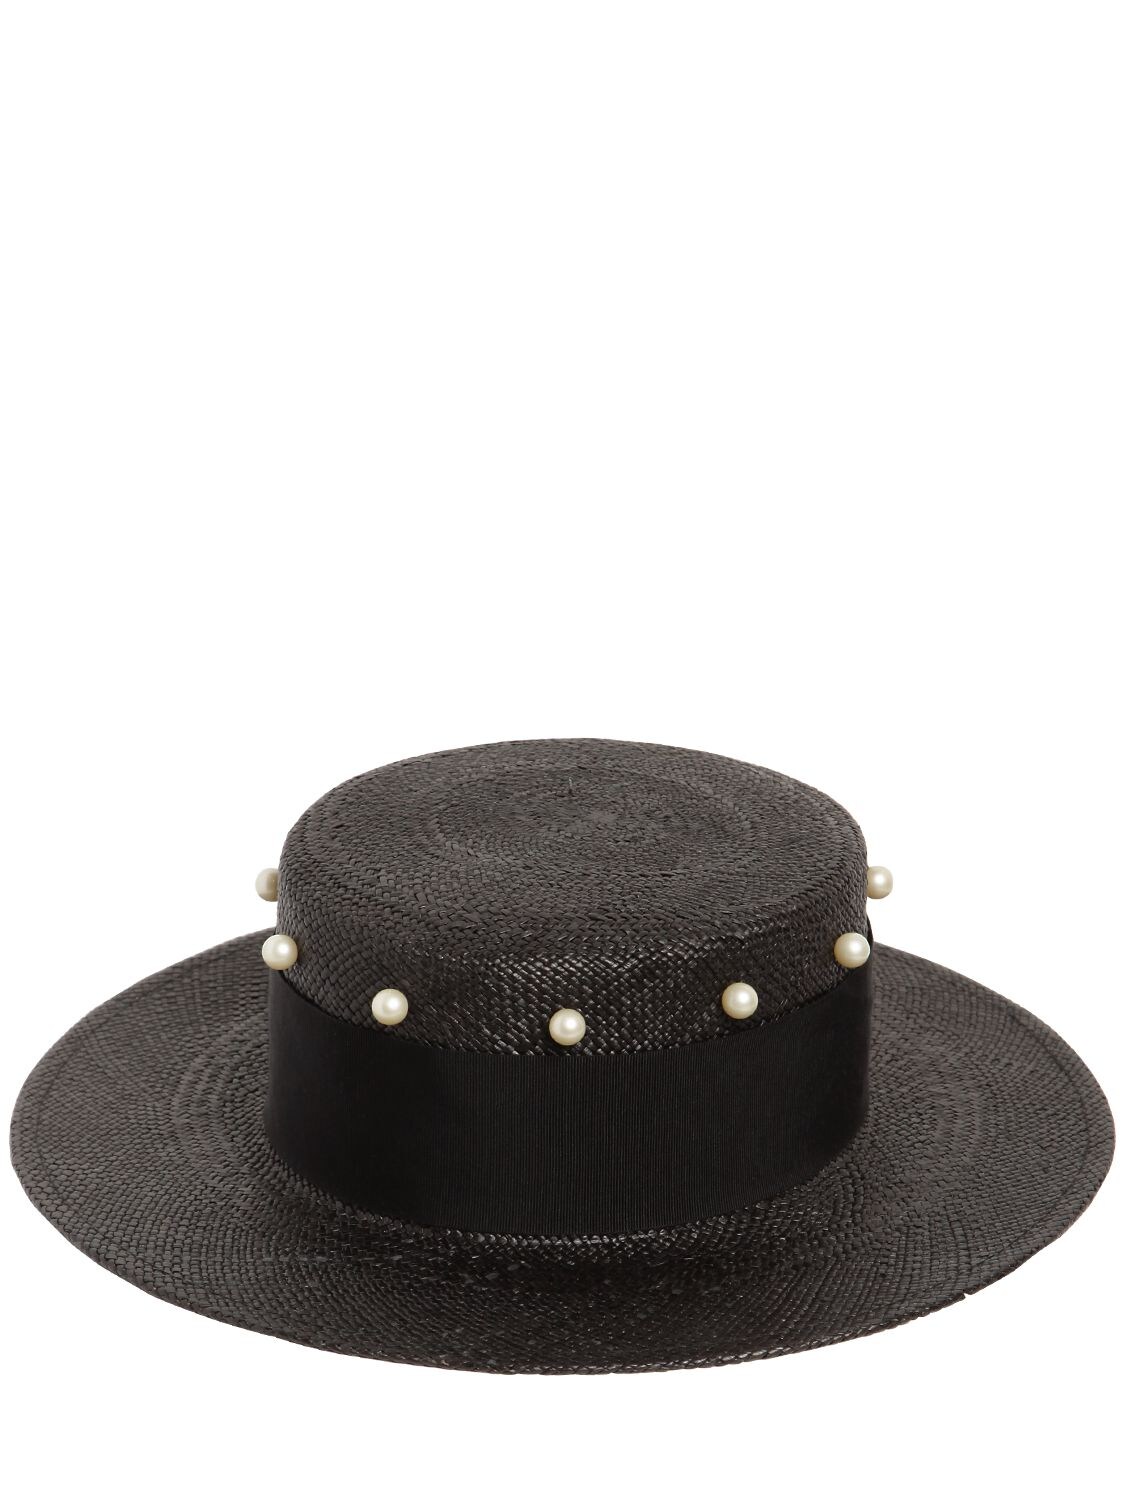 Federica Moretti Small Brim Hat W/ Imitation Pearls In Black